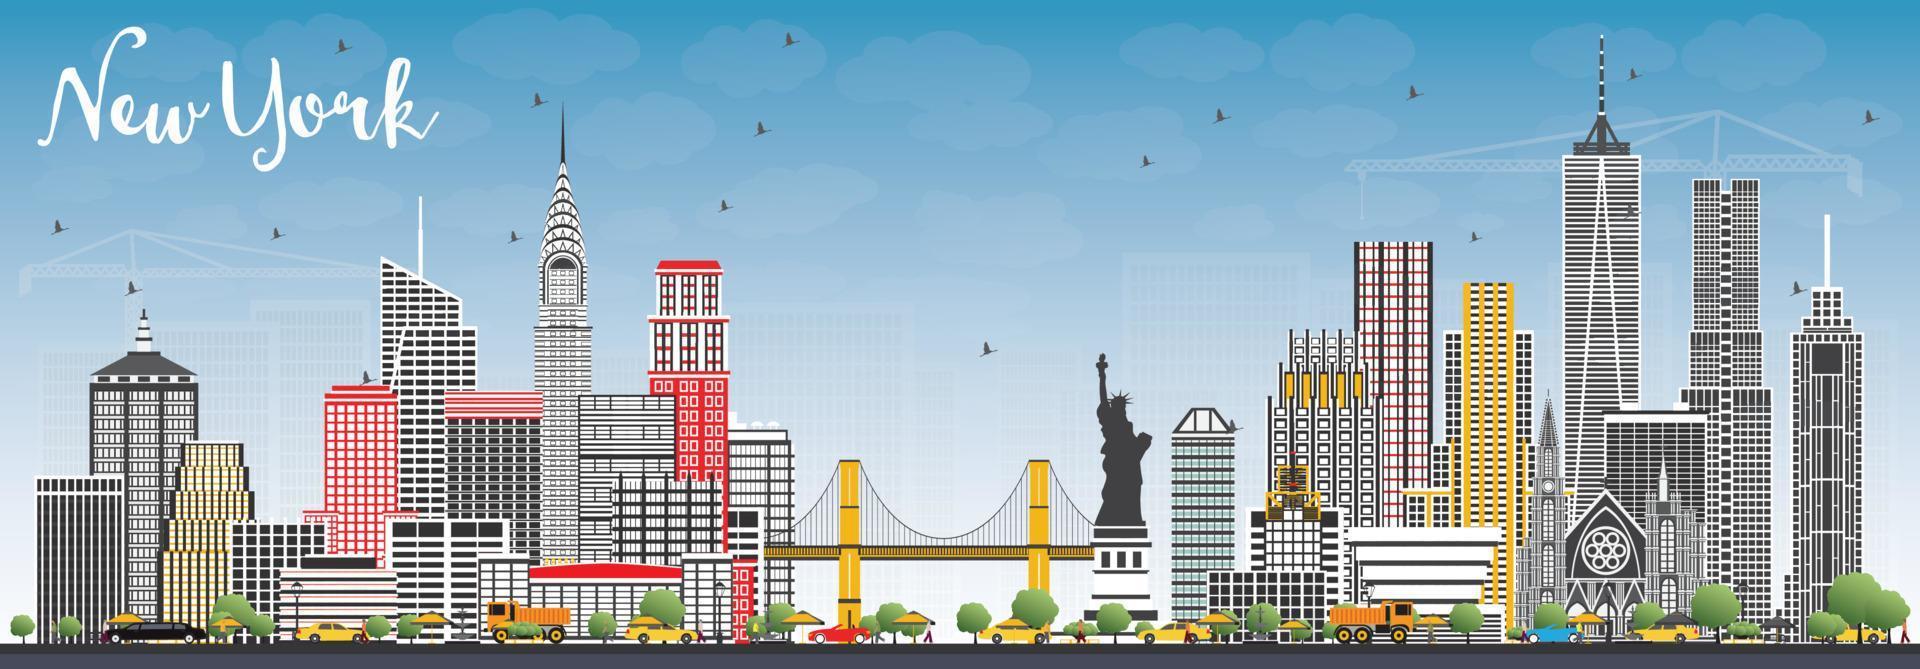 el horizonte de la ciudad de nueva york usa con rascacielos grises y cielo azul. vector